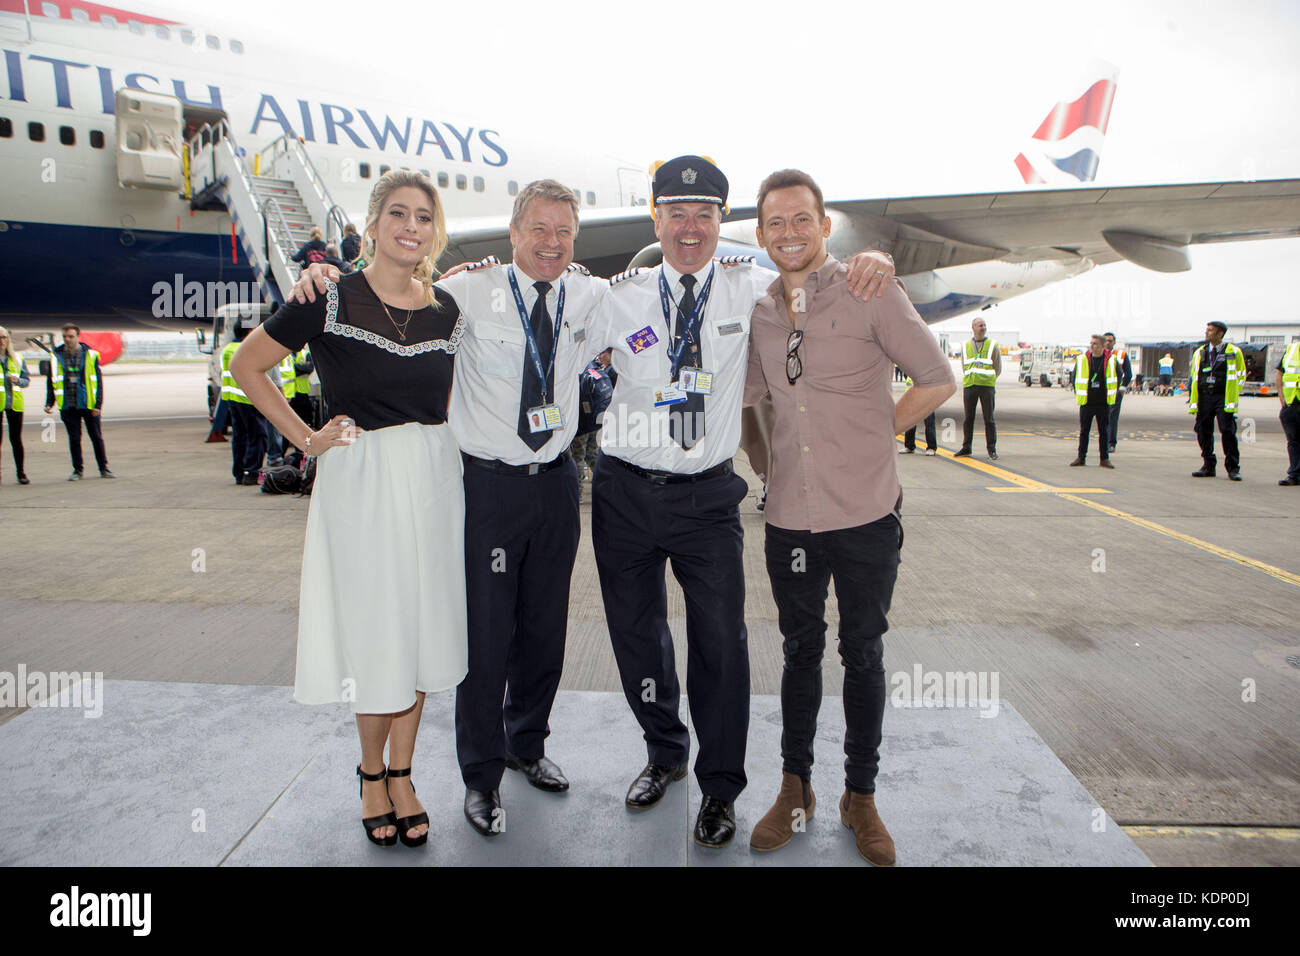 Joe Swash und Stacey soloman mit British Airways Piloten phil Bollendorf und Andy raynes, wie Sie Welle aus Kinder gehen auf die dreamflight Reise in den USA vom Flughafen Heathrow nach Florida. Stockfoto